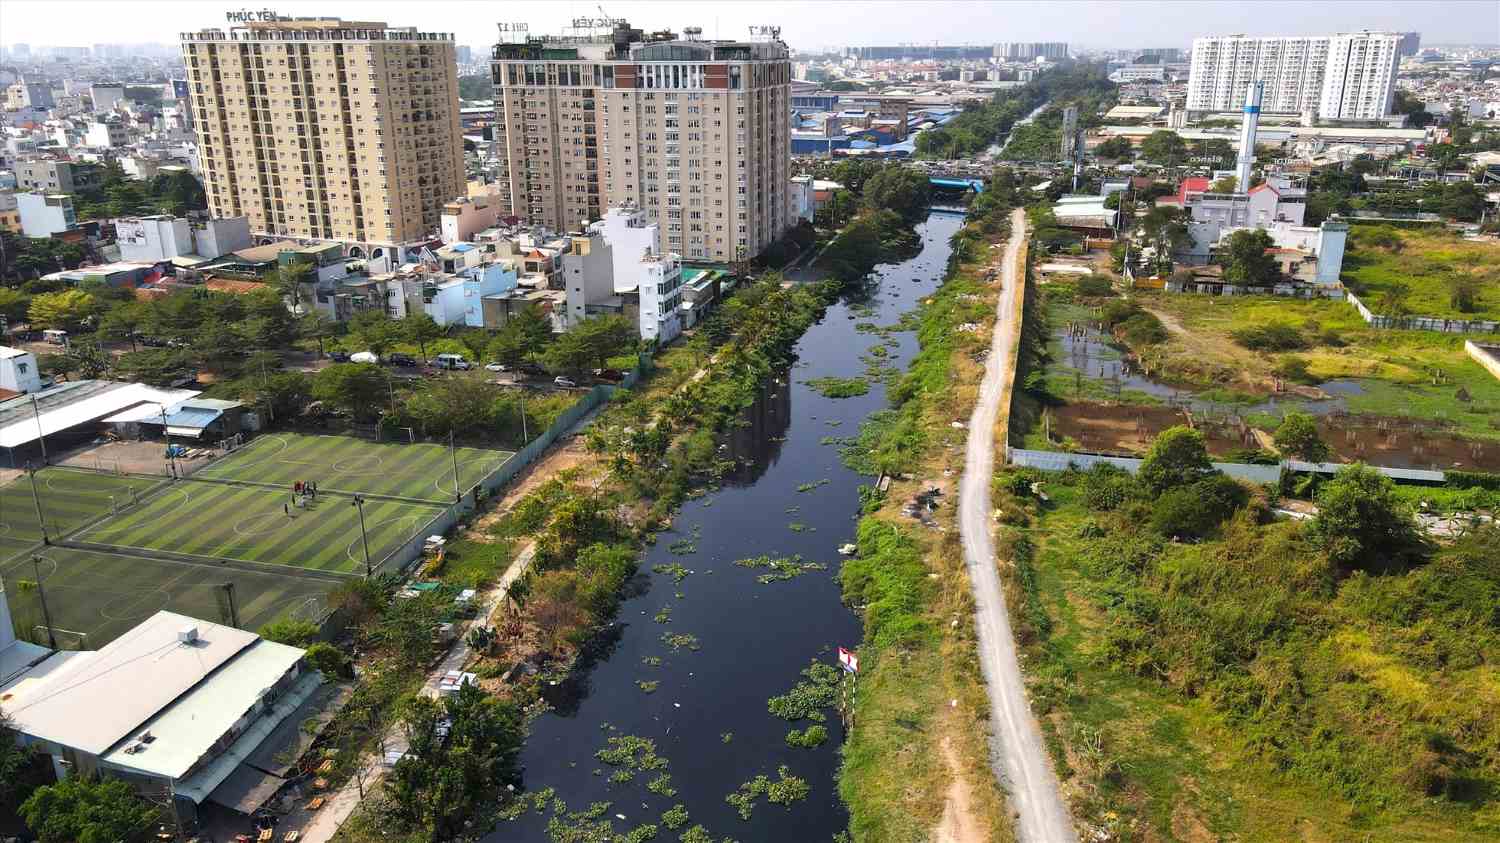 Dài gần 32 km, kênh Tham Lương - Bến Cát - rạch Nước Lên chảy qua quận 12, Bình Tân, Tân Phú, Tân Bình, Gò Vấp, Bình Thạnh và huyện Bình Chánh. Đây là kênh dài nhất nhưng cũng là một trong những tuyến ô nhiễm nhất TPHCM. Trong ảnh là đoạn kênh chảy qua quận Tân Bình trước khi được cải tạo.